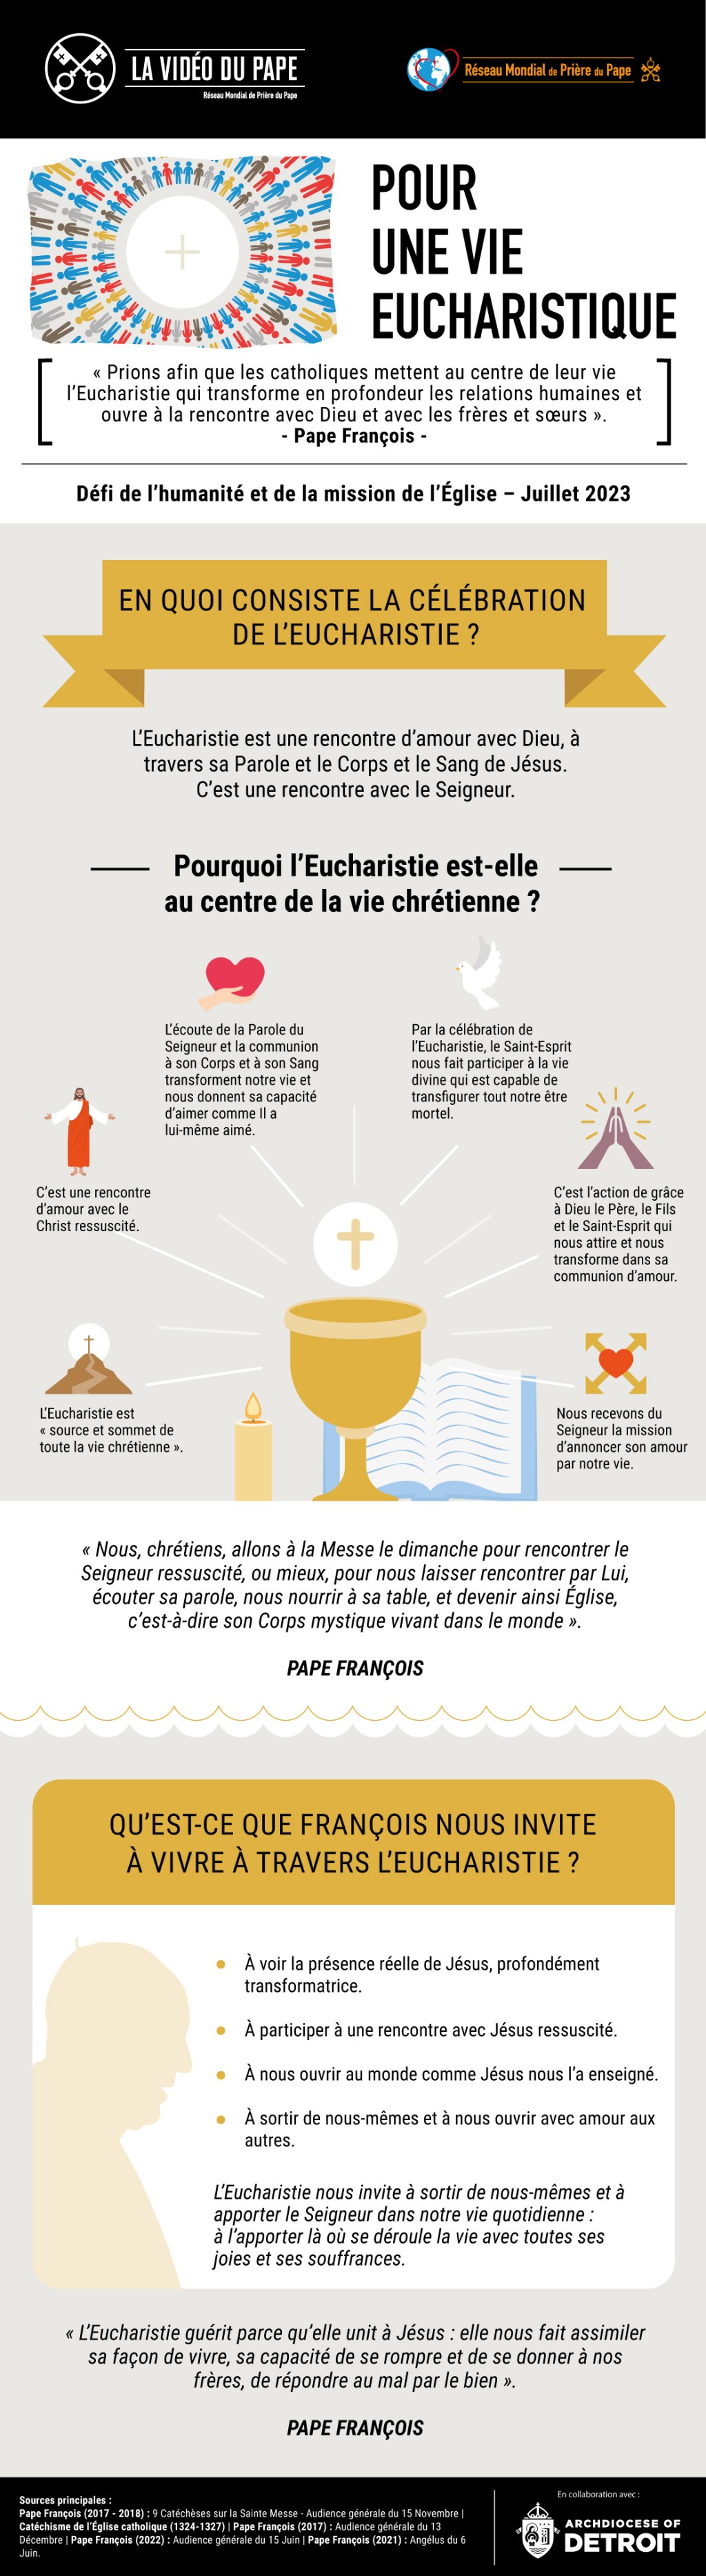 eucharistie infographie